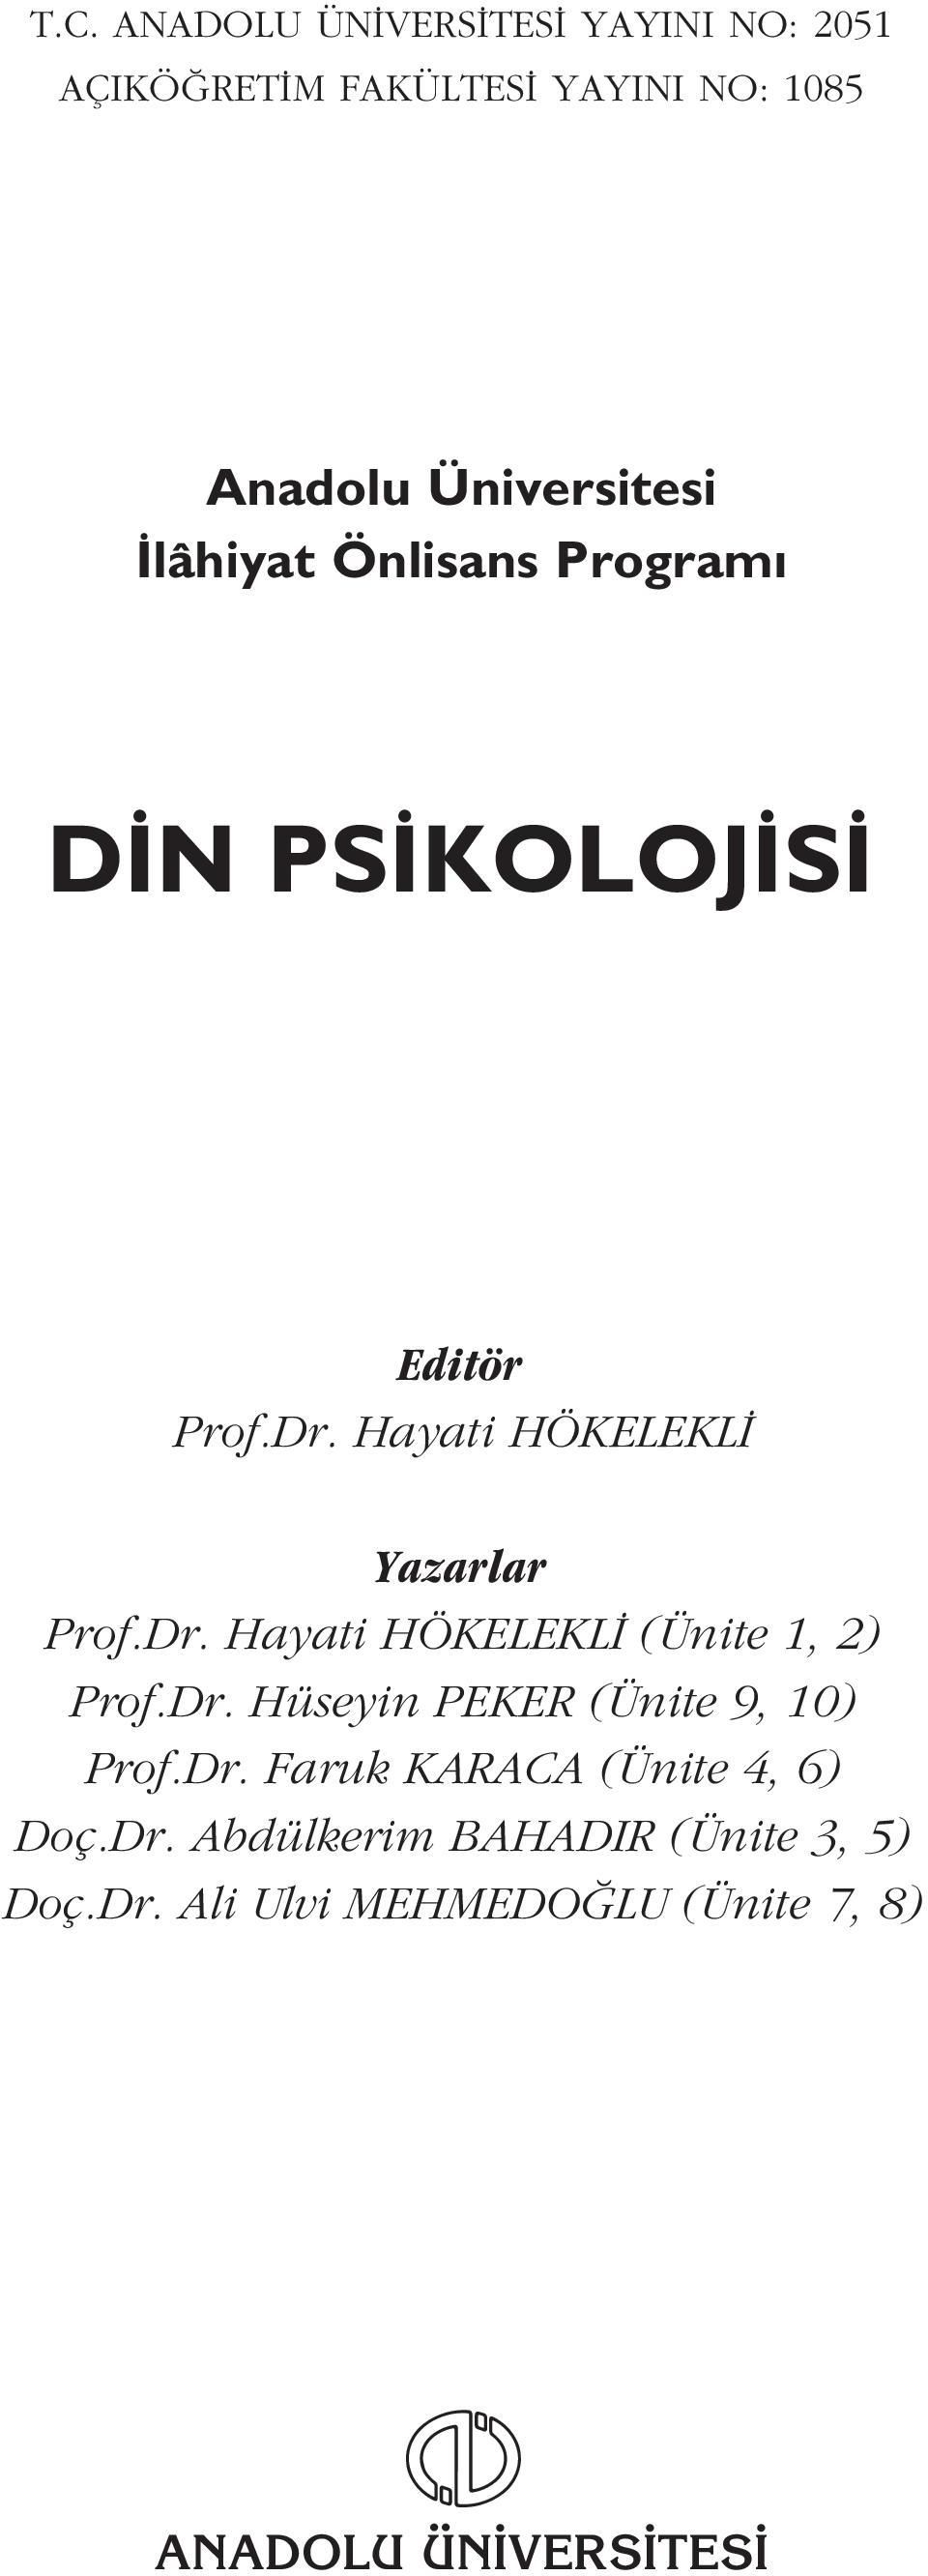 Hayati HÖKELEKL Yazarlar Prof.Dr. Hayati HÖKELEKL (Ünite 1, 2) Prof.Dr. Hüseyin PEKER (Ünite 9, 10) Prof.